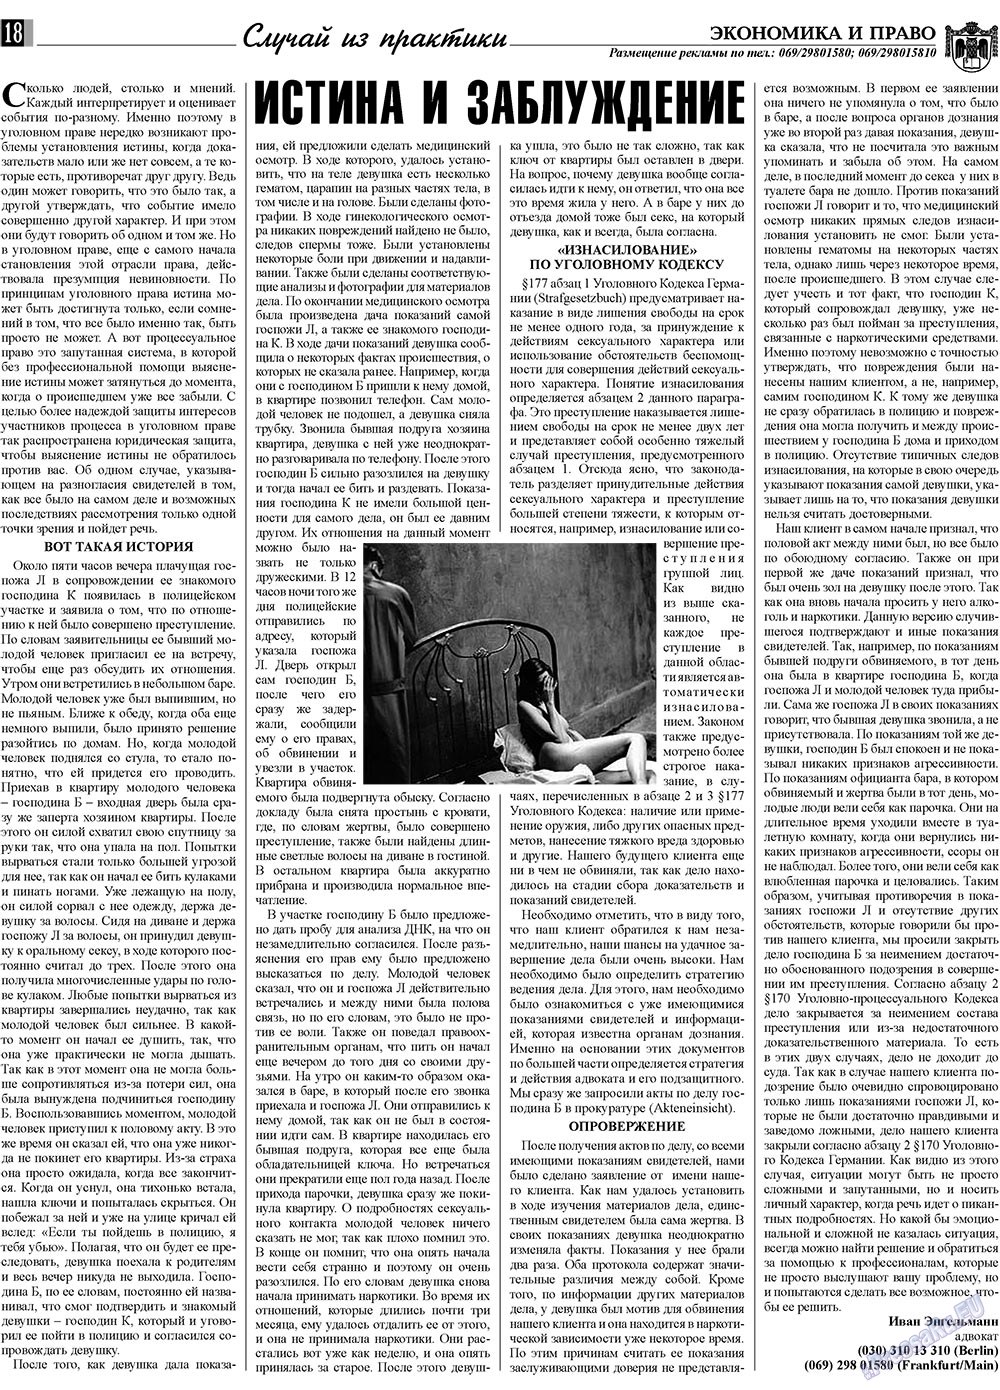 Экономика и право, газета. 2009 №2 стр.18